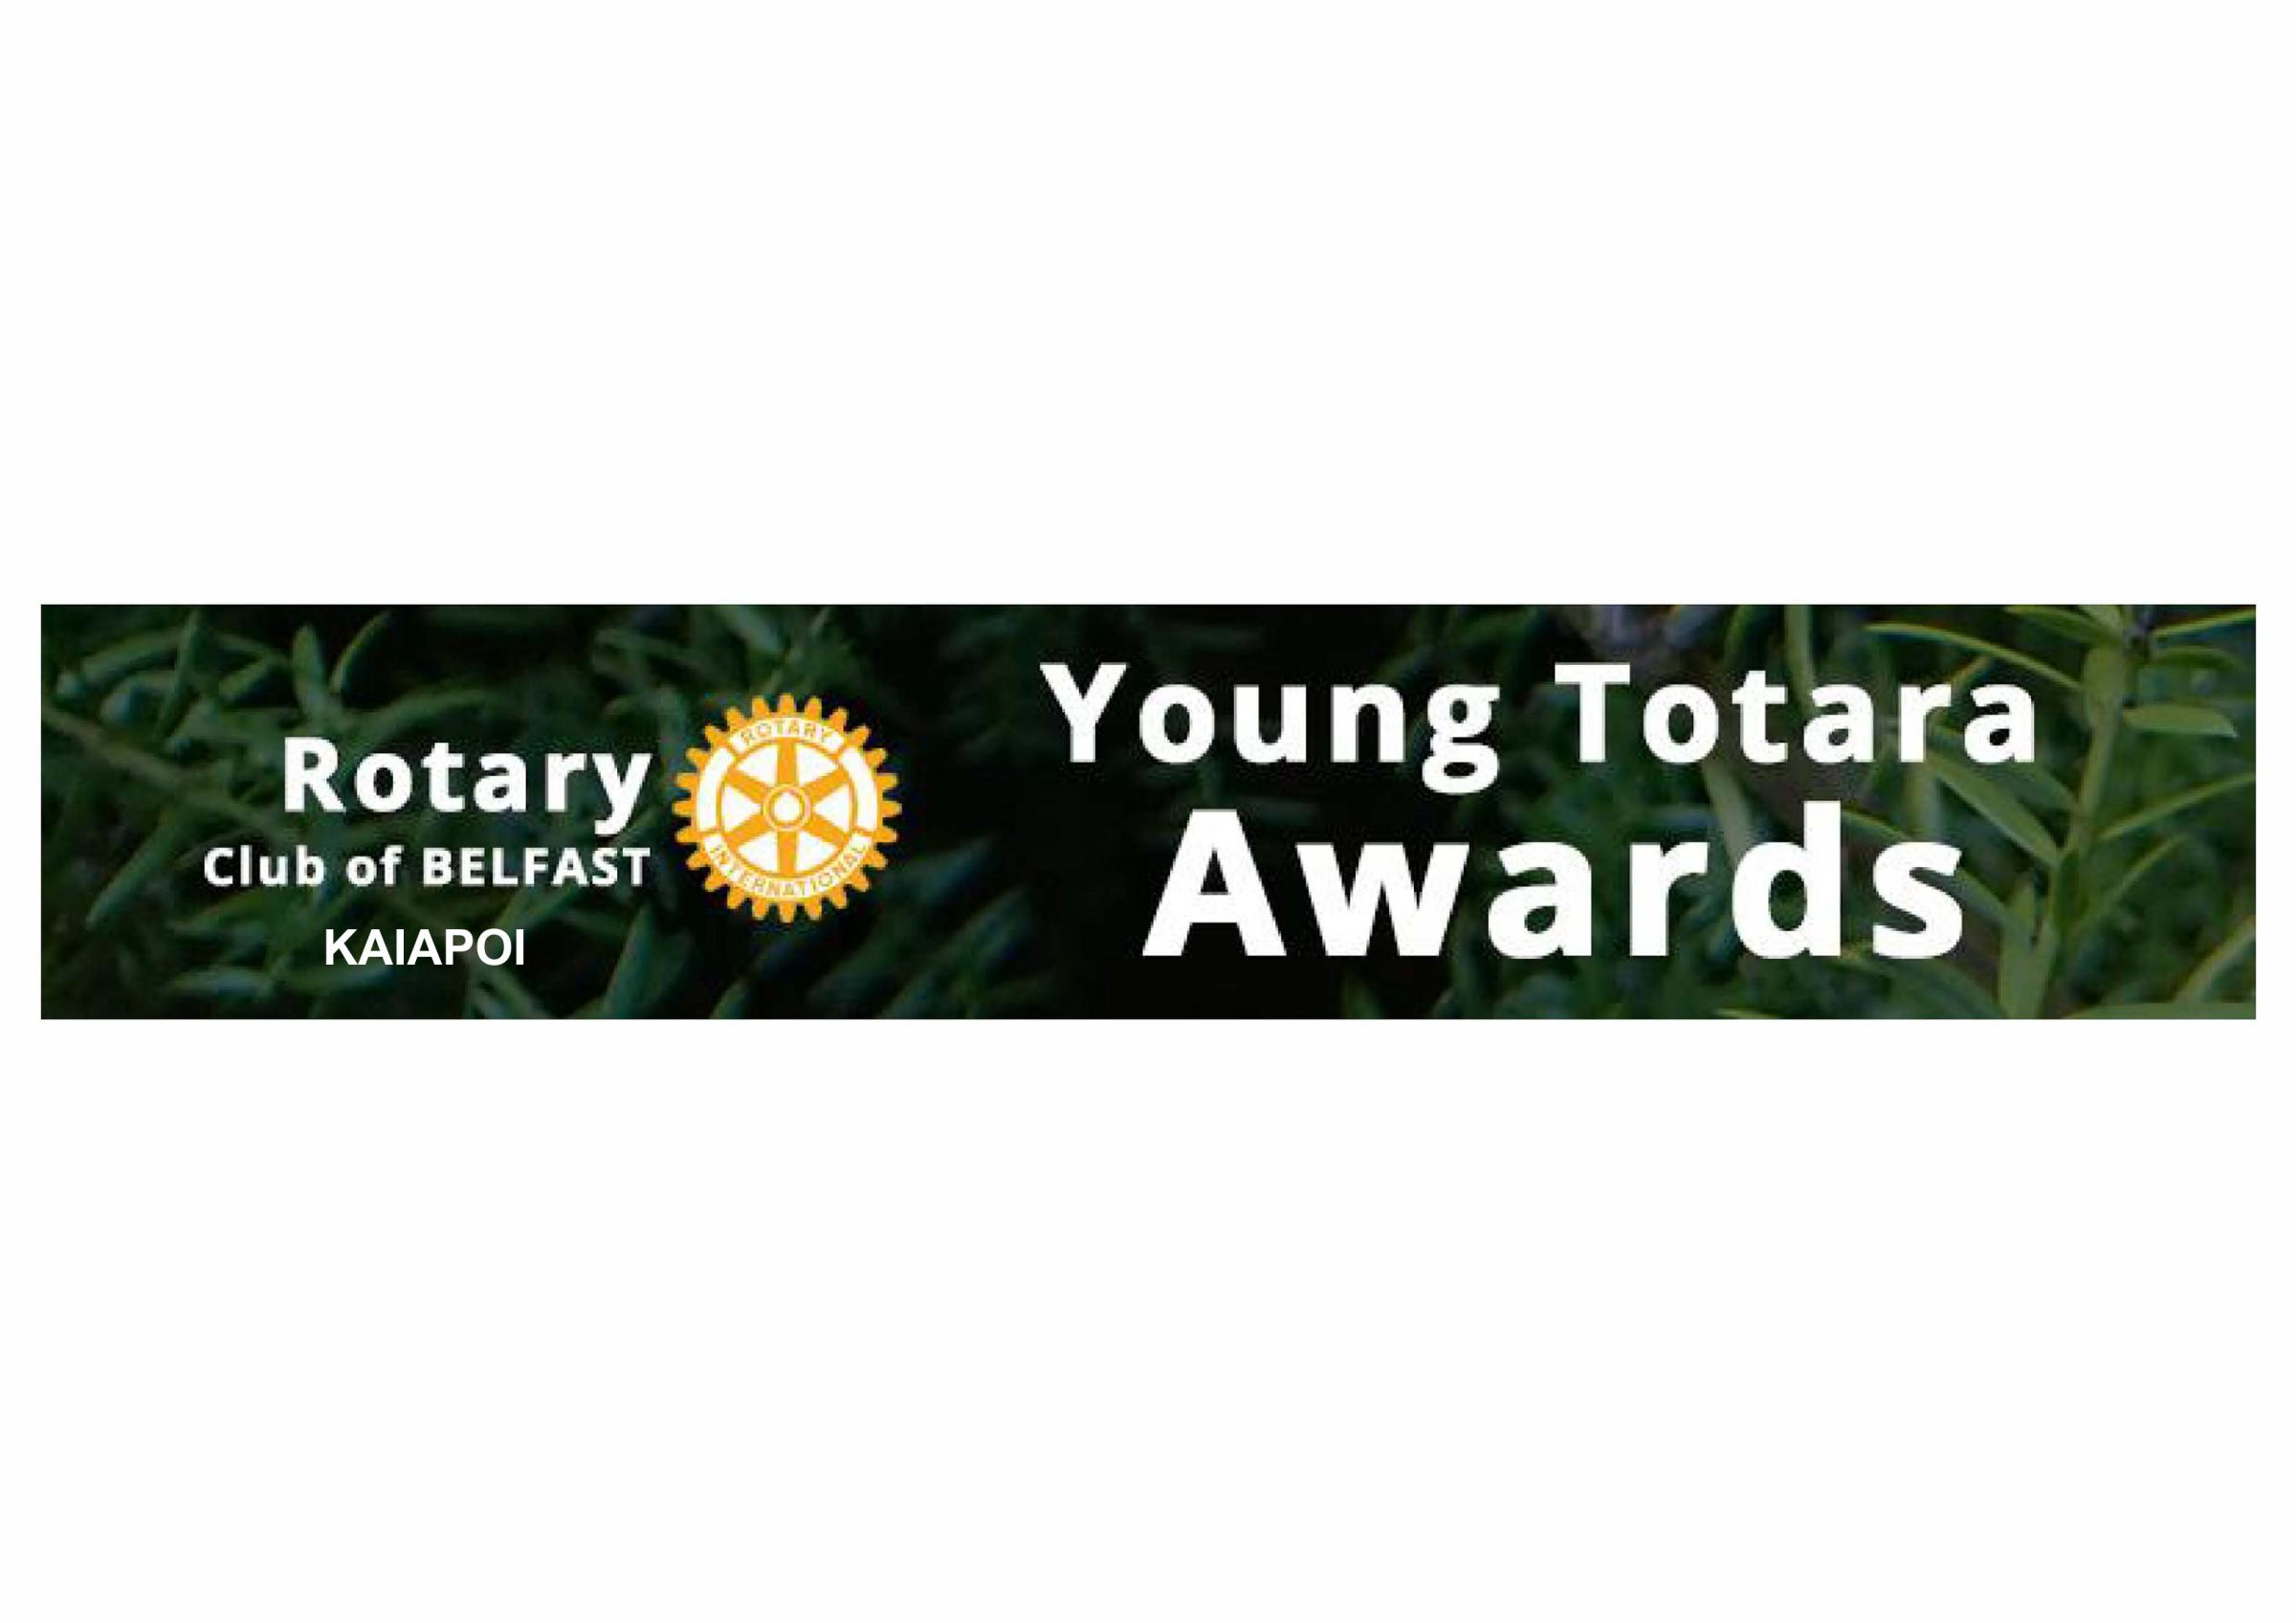 Young Totara Awards